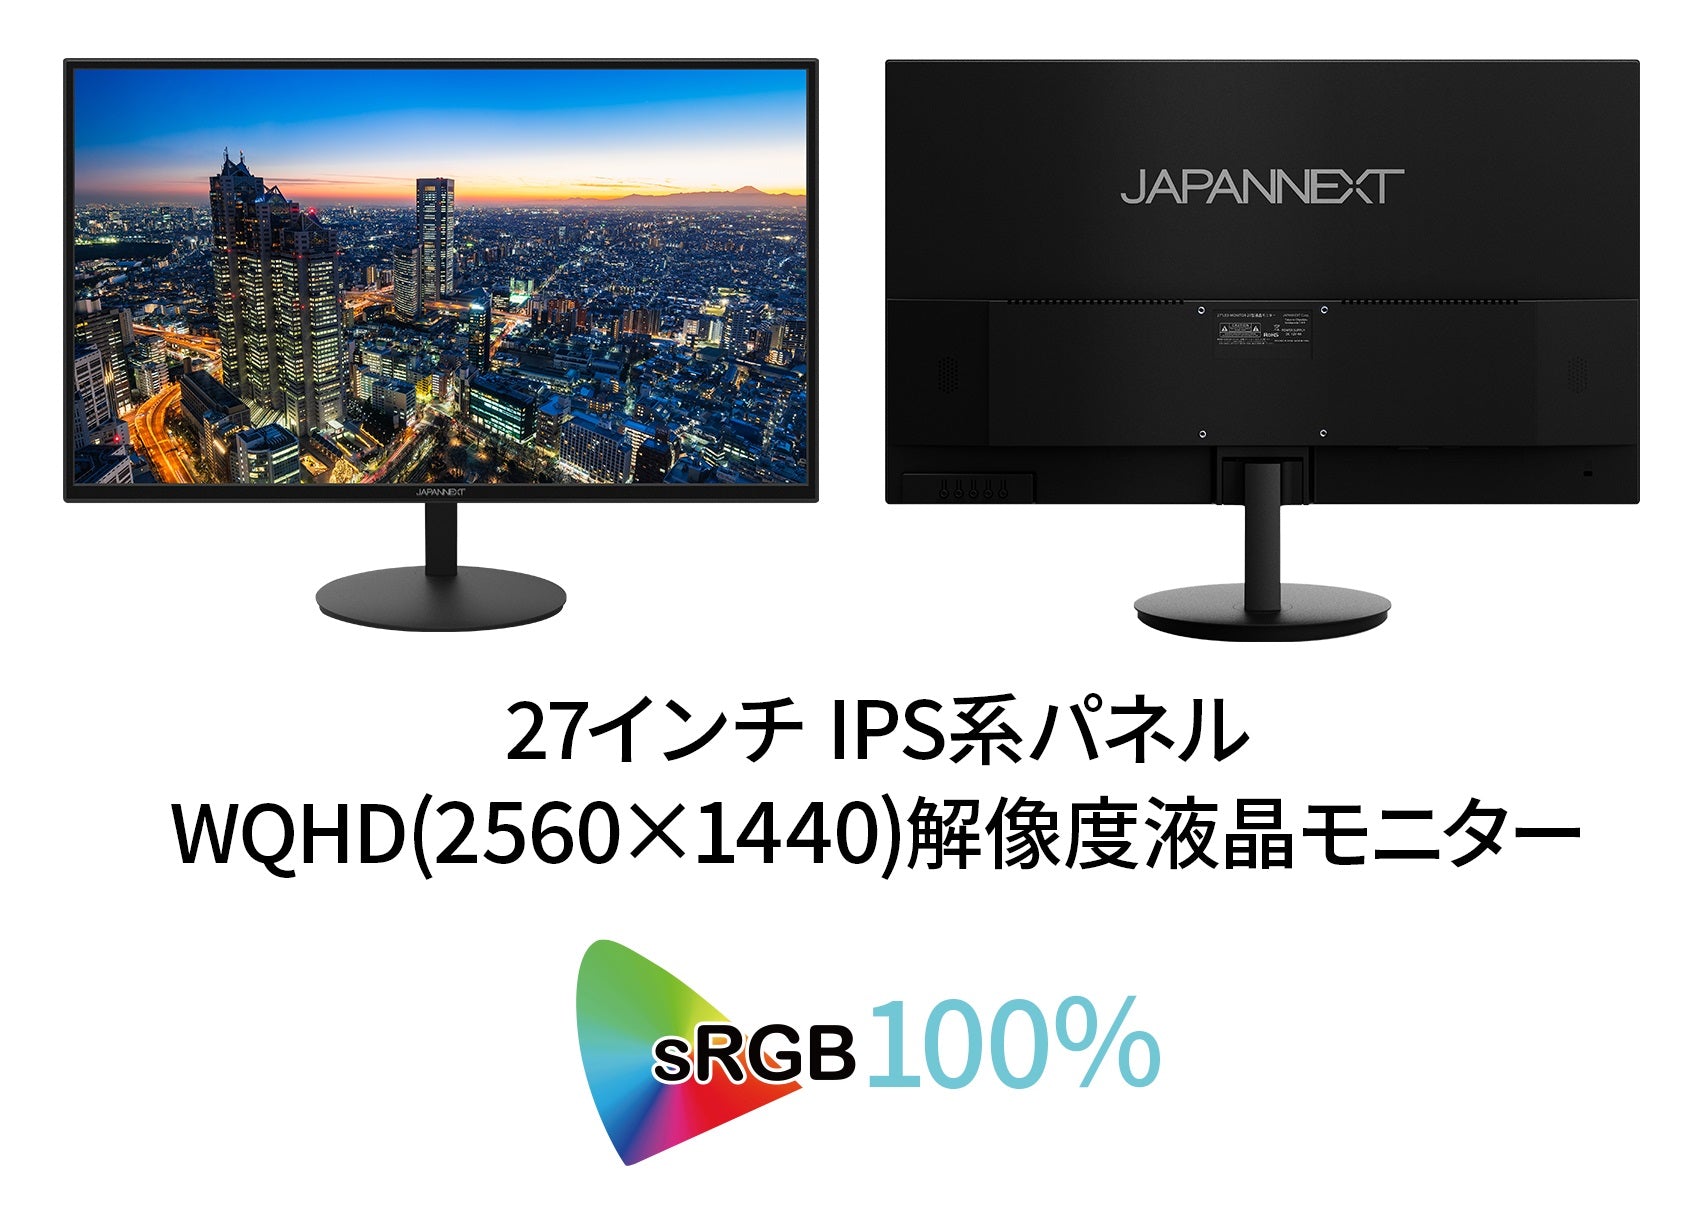 JAPANNEXT 27インチ WQHD(2560 x 1440) 液晶モニター